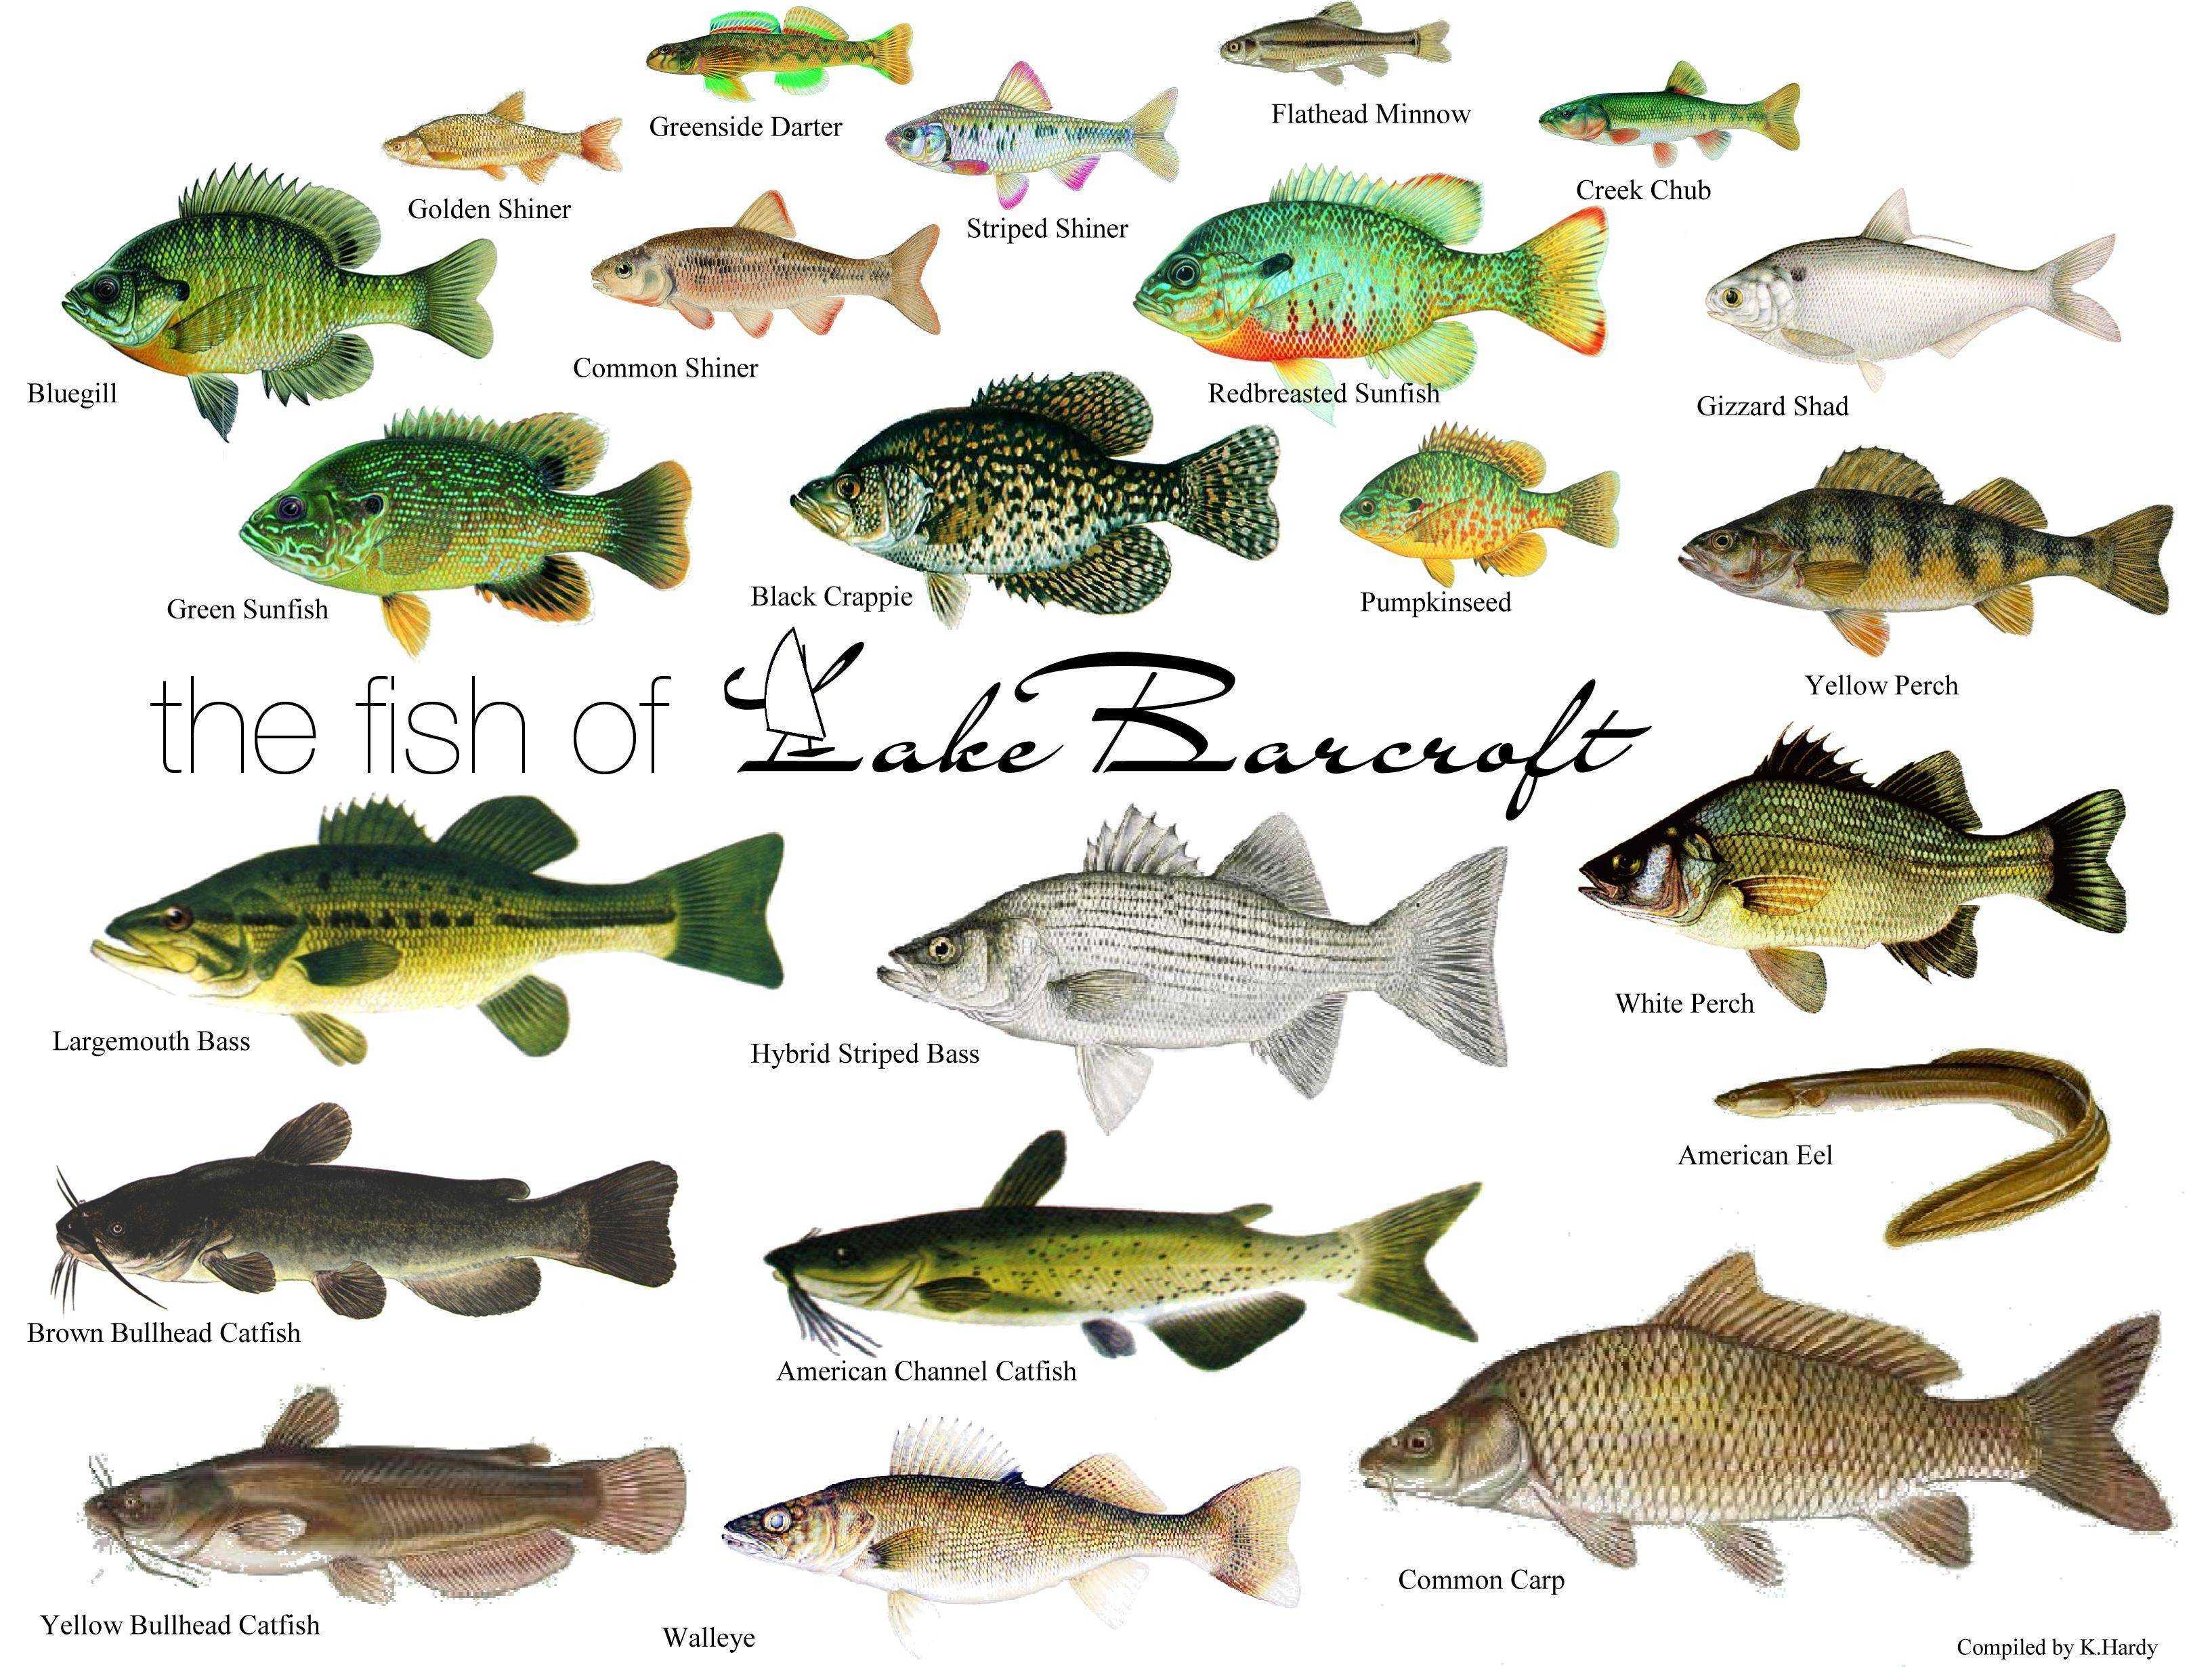 Самые маленькие рыбы в мире: морские и пресноводные рыбки, как называются и описание